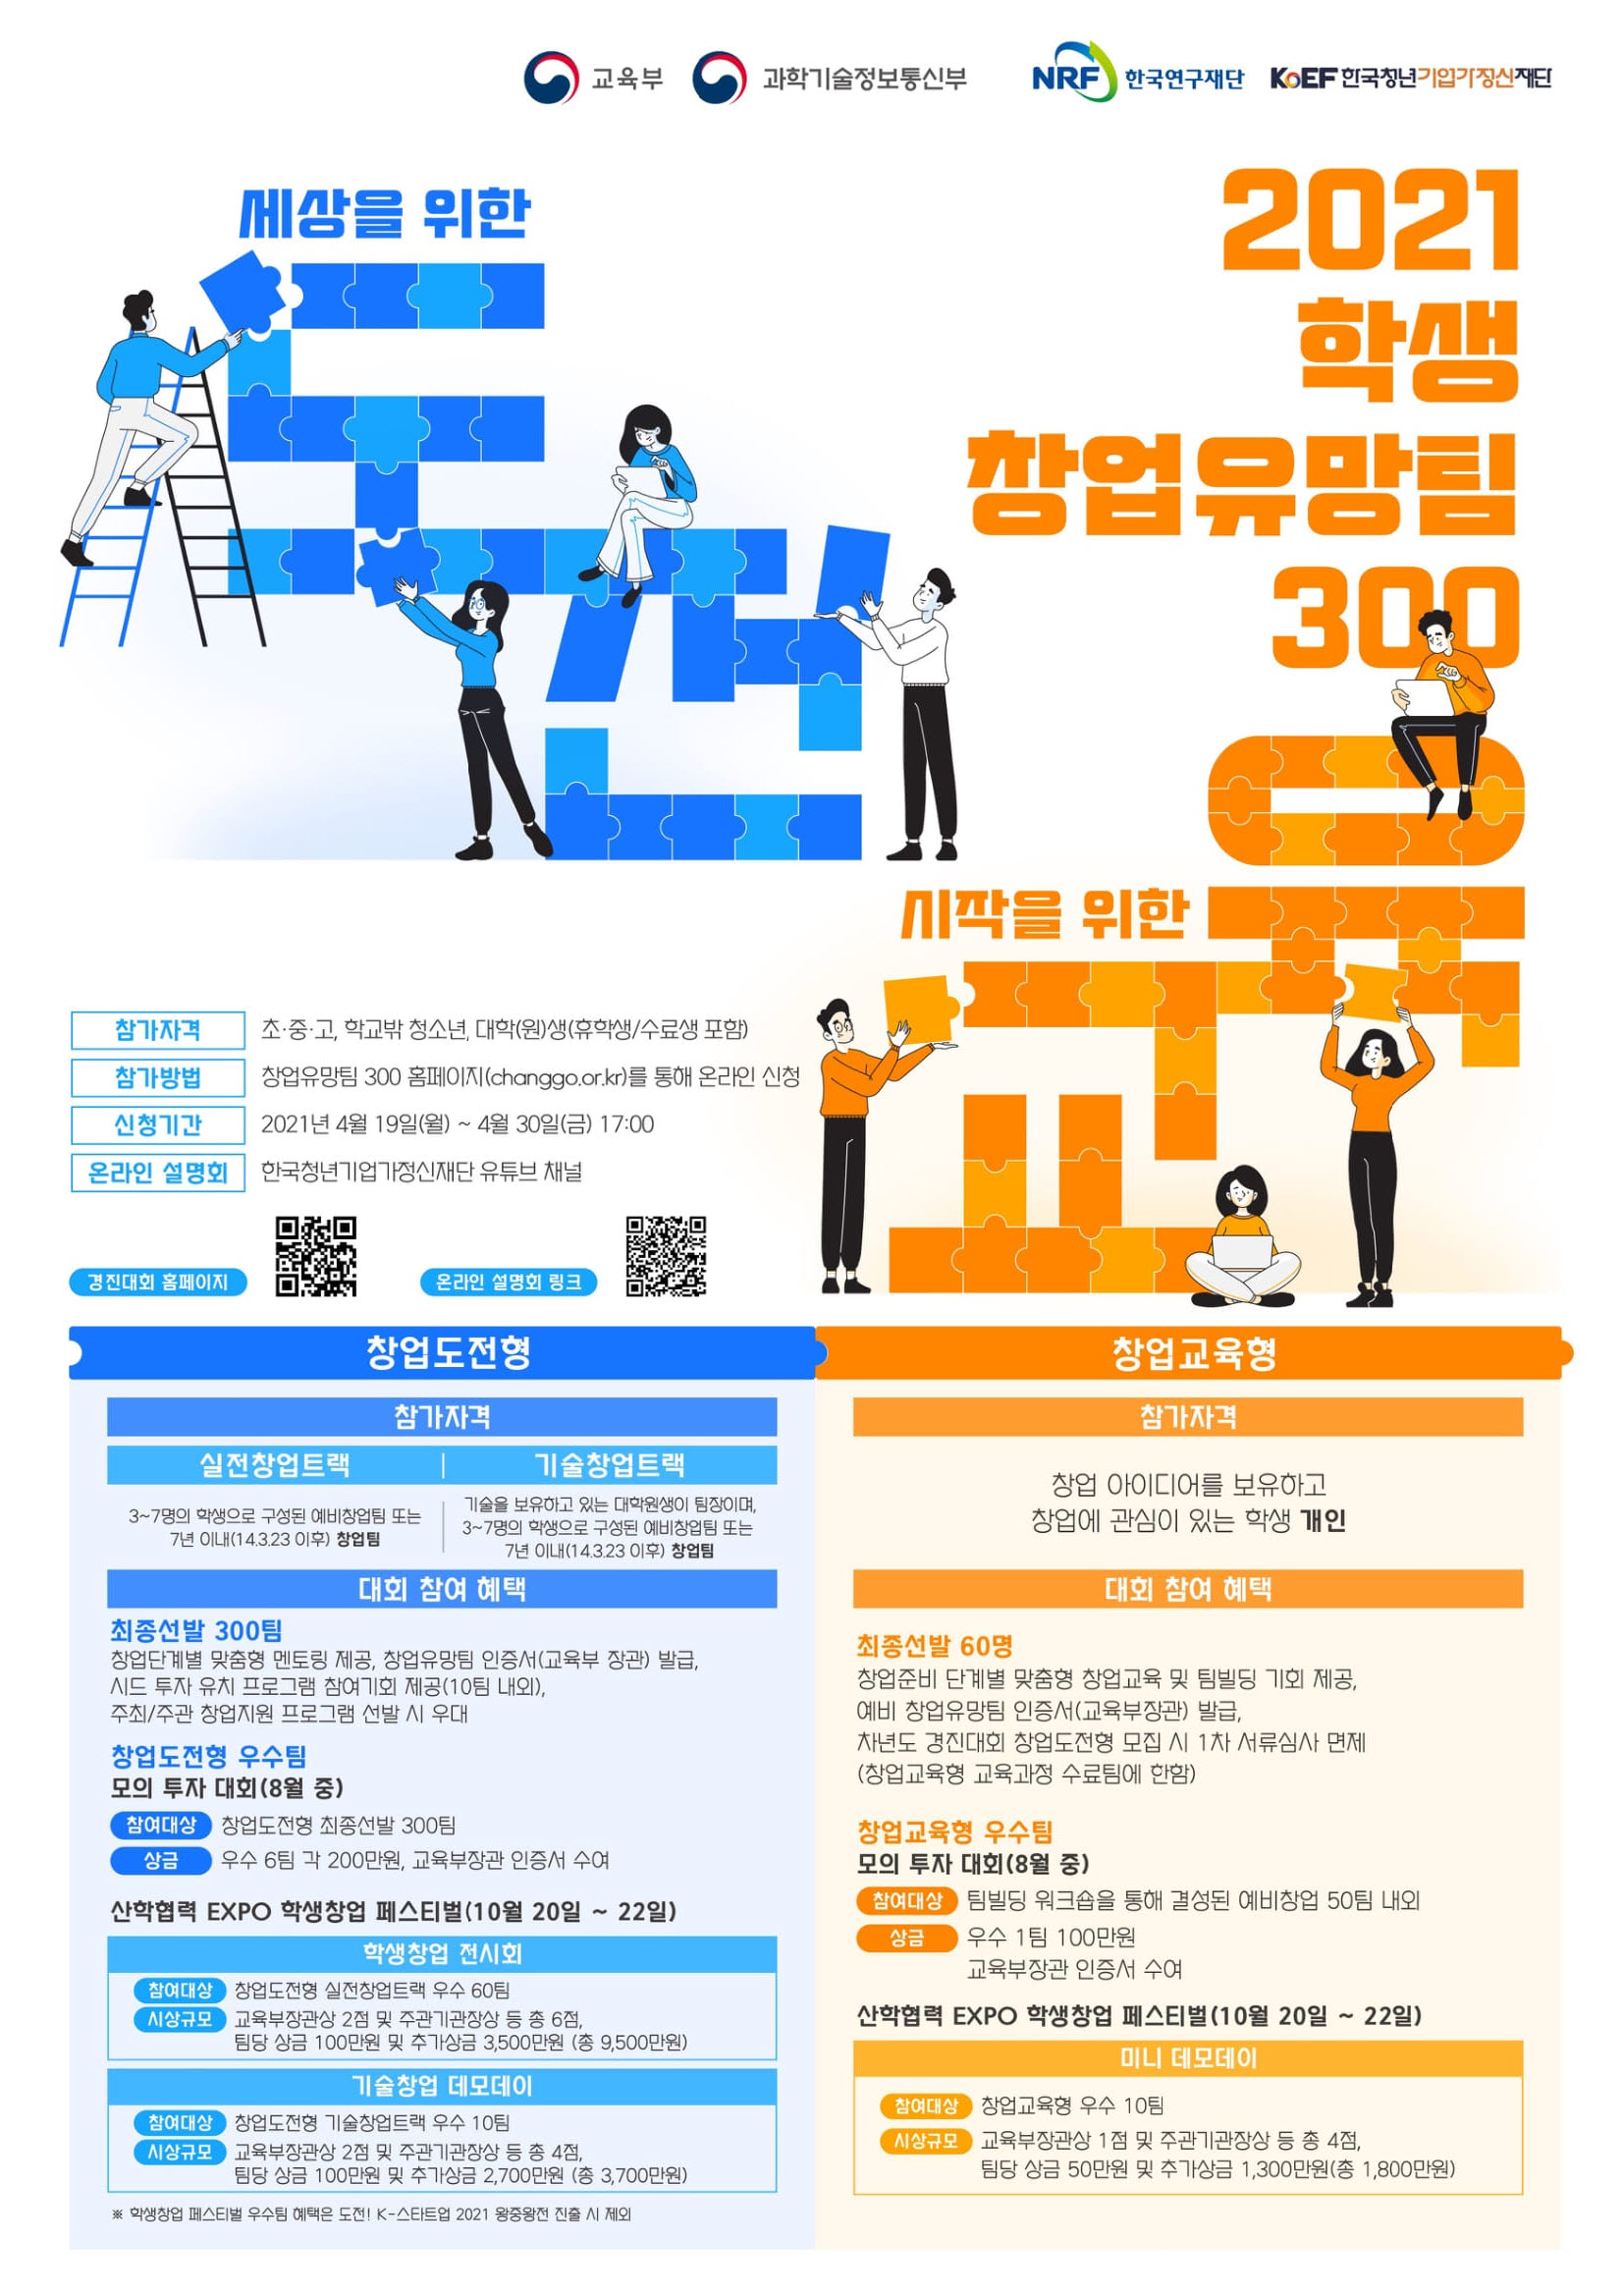 [교육부/과학기술정보통신부] 「2021년 학생 창업유망팀 300 경진대회」개최